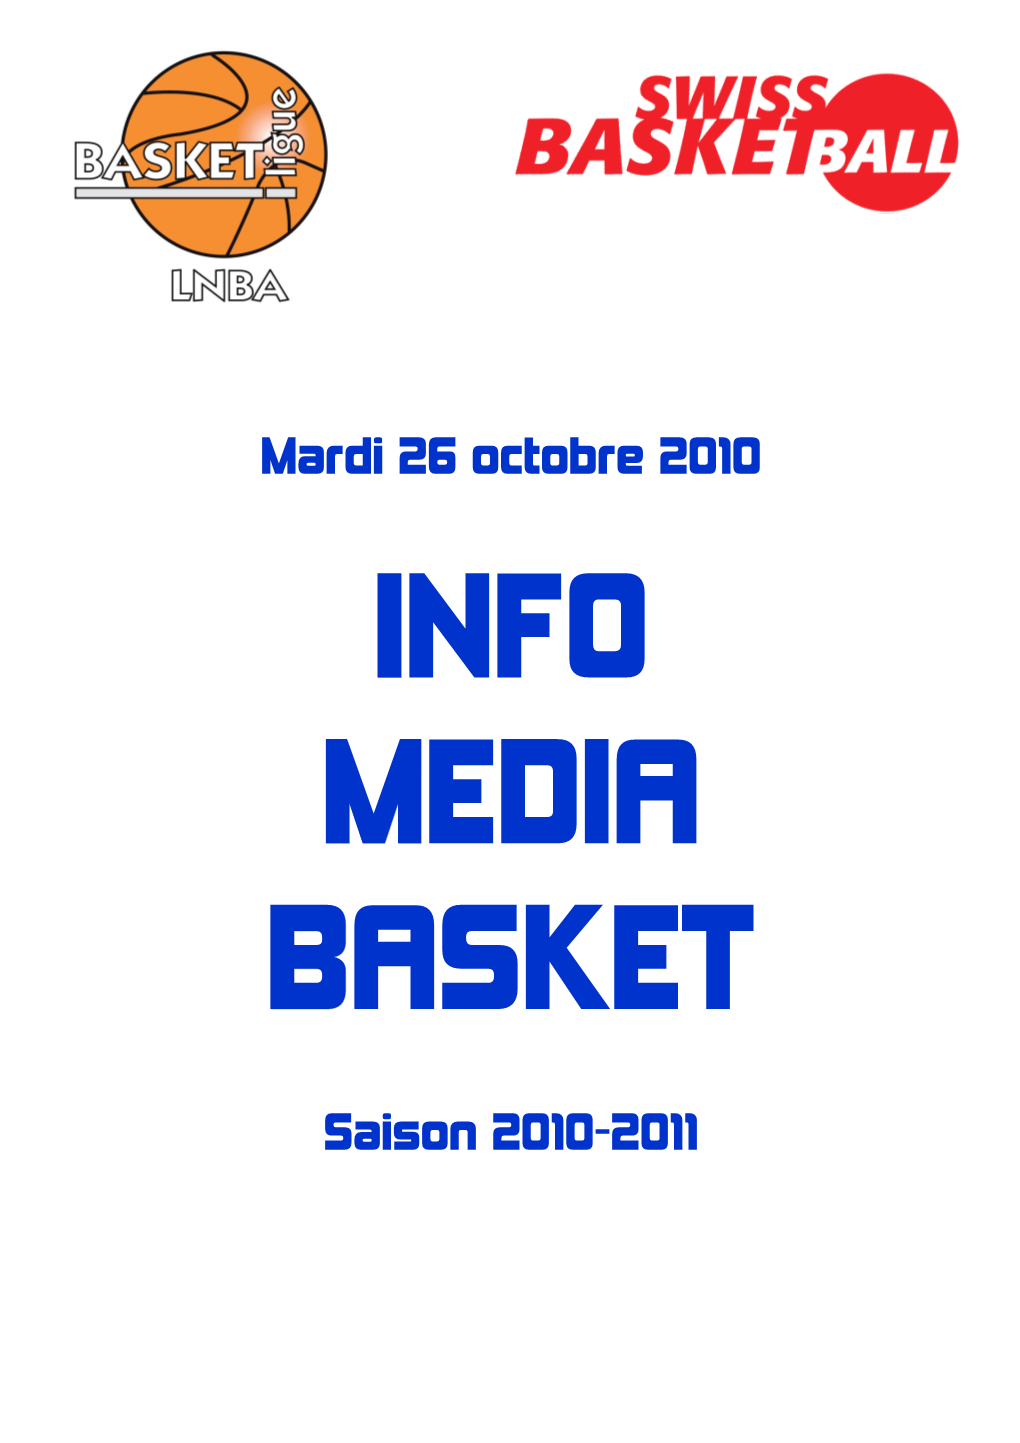 Mardi 26 Octobre 2010 Saison 2010-2011